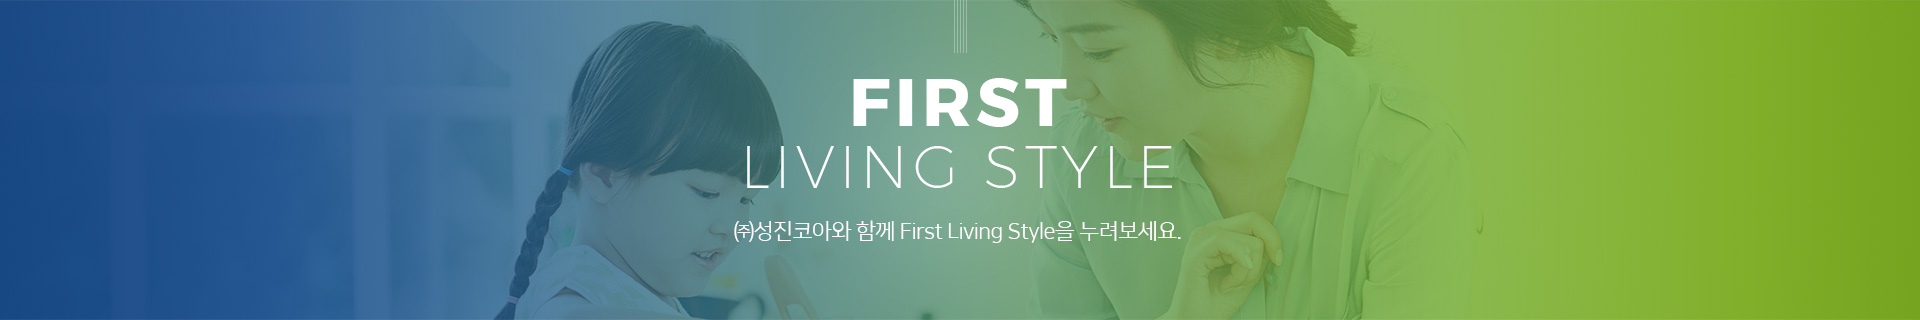 성진코아와 함께 First Living Style을 누려보세요.